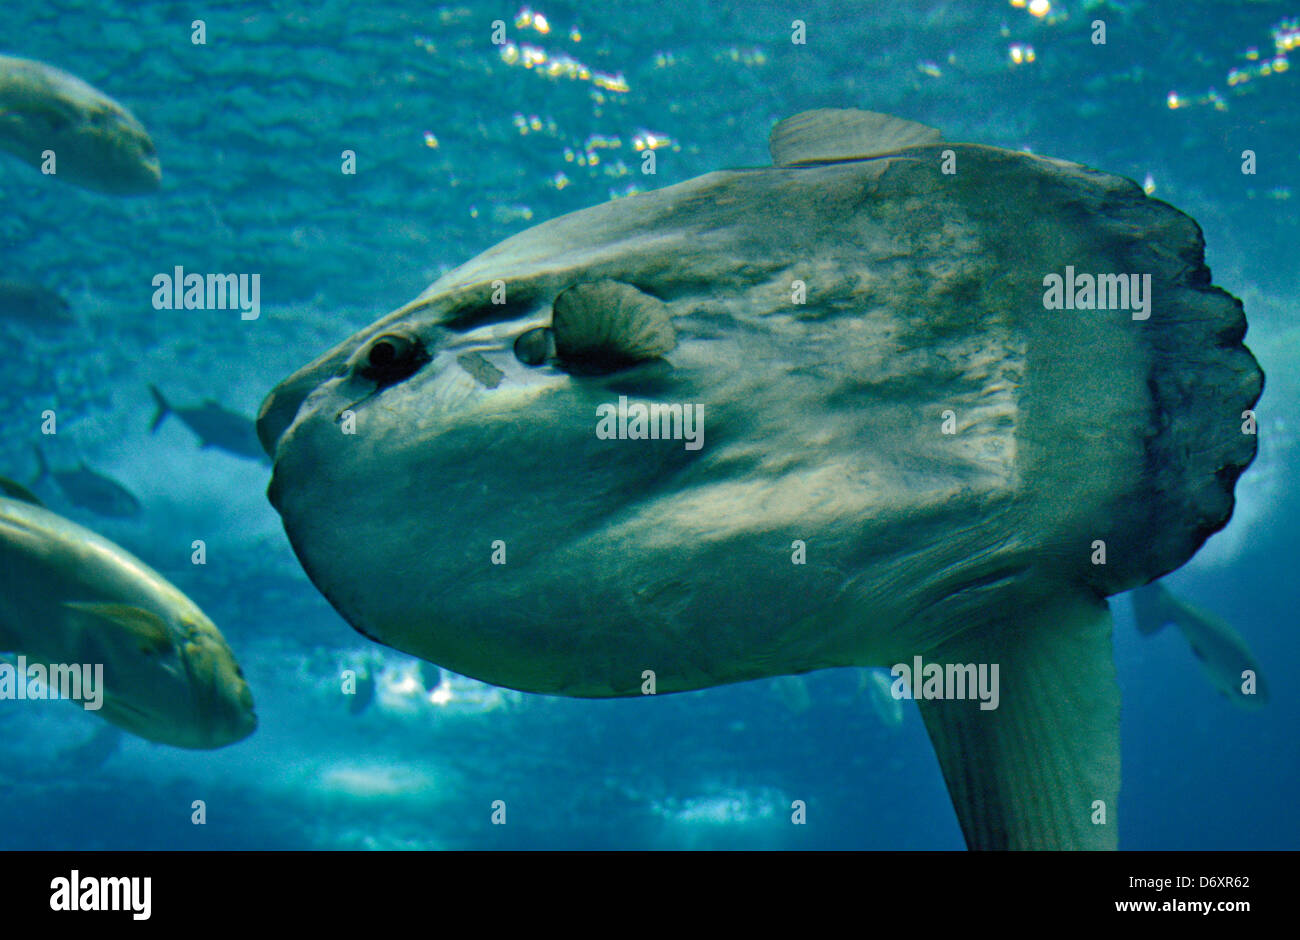 Portugal, Lisbon: Baby sunfish (Mola mola) in the Oceanario de